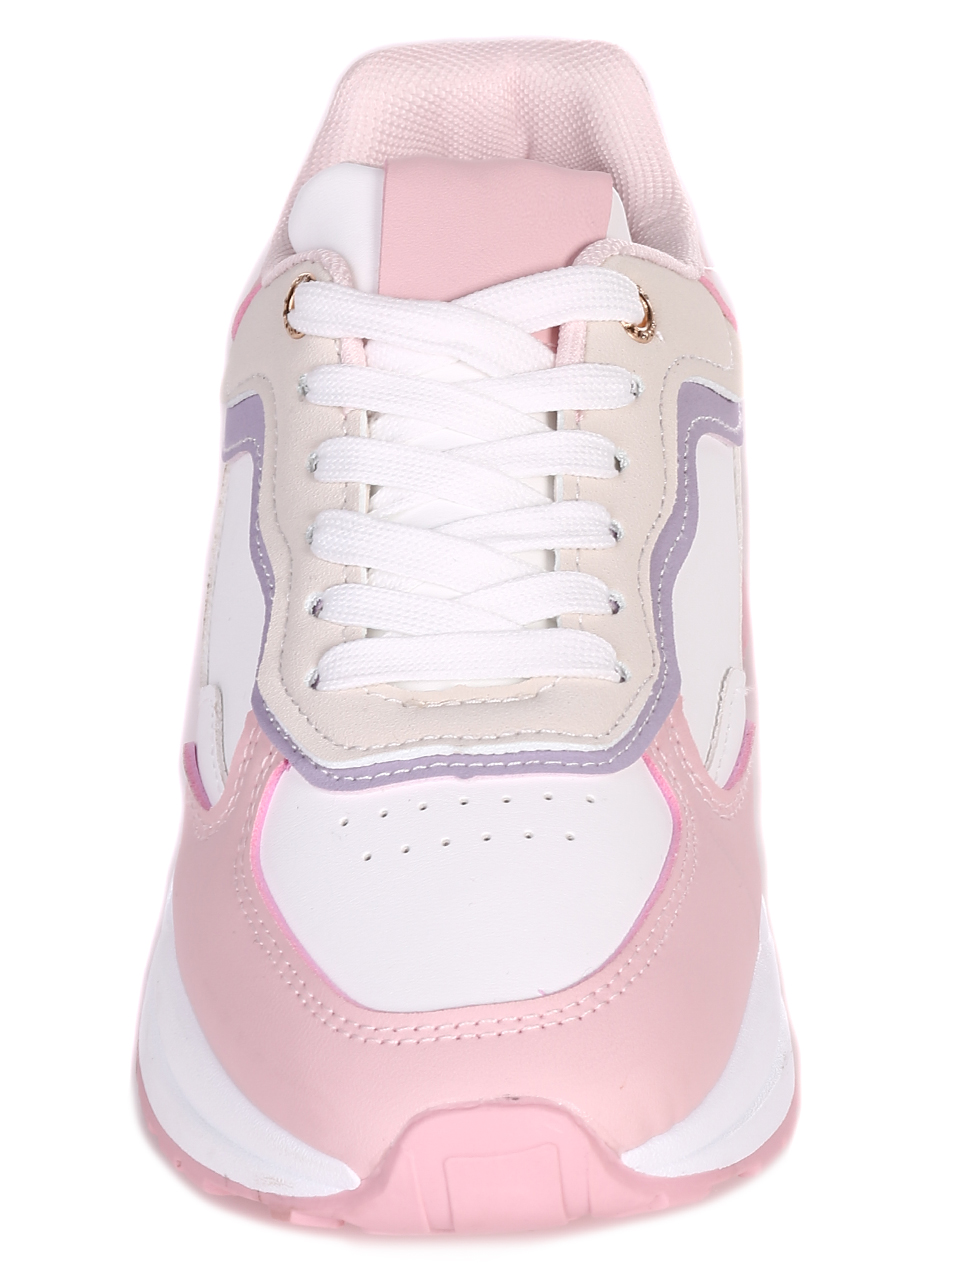 Ежедневни дамски комфортни обувки в бяло и розово 3U-23052 white/pink